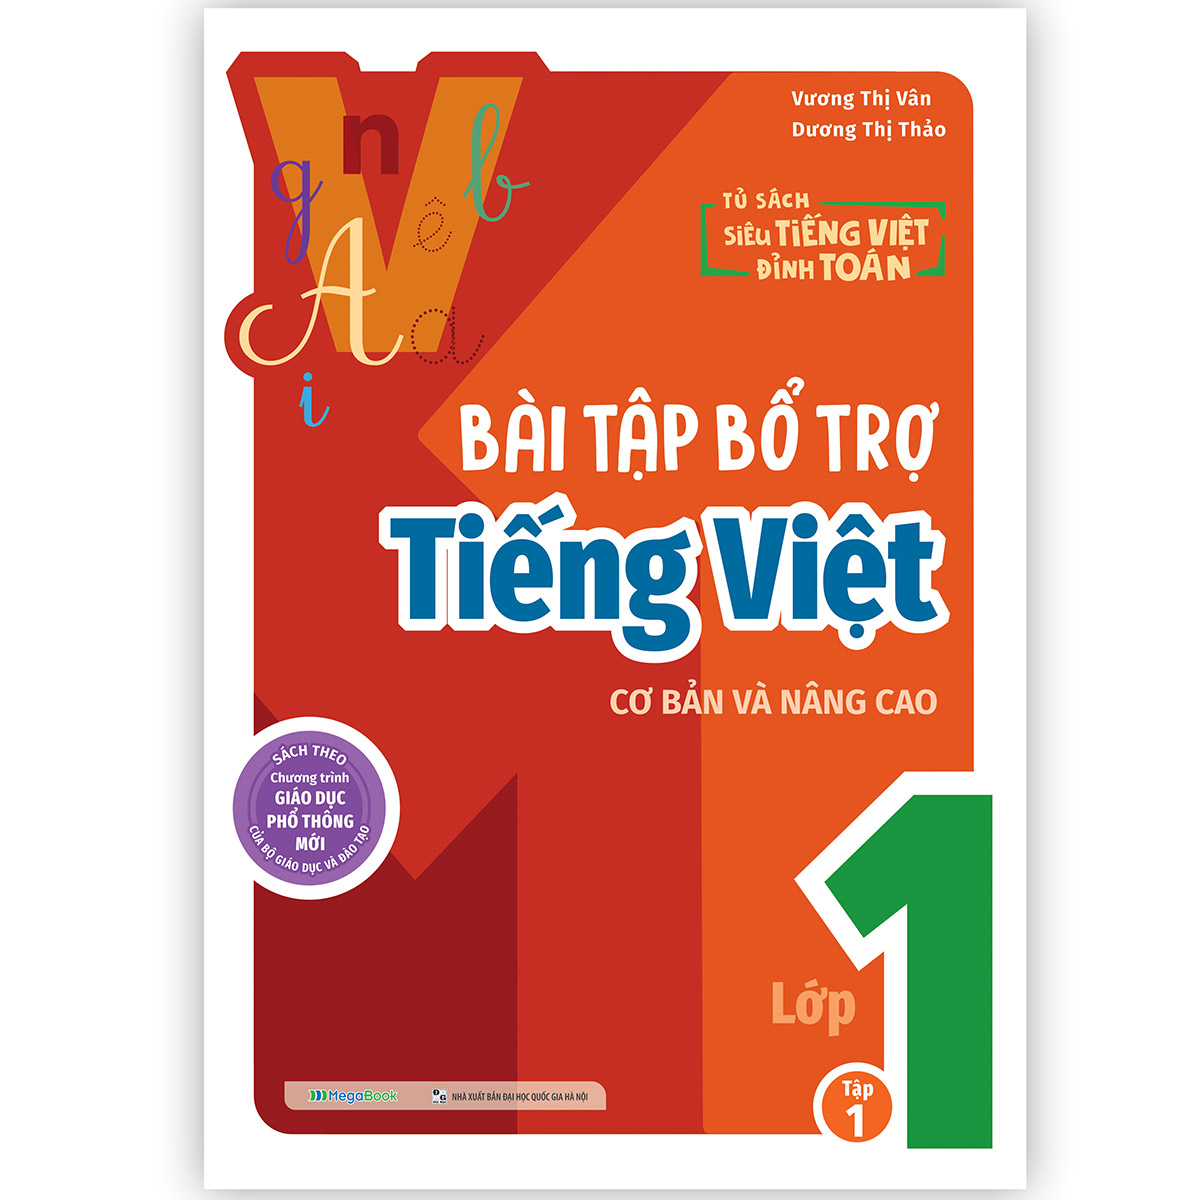 Bài tập bổ trợ Tiếng Việt cơ bản và nâng cao lớp 1 Tập 1